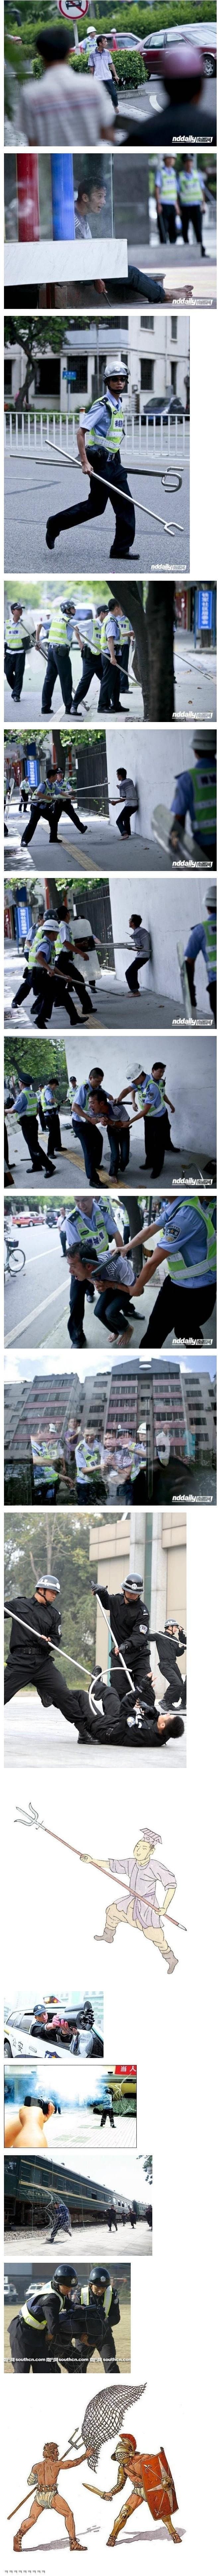 중국에서 칼부림 제압하는 법